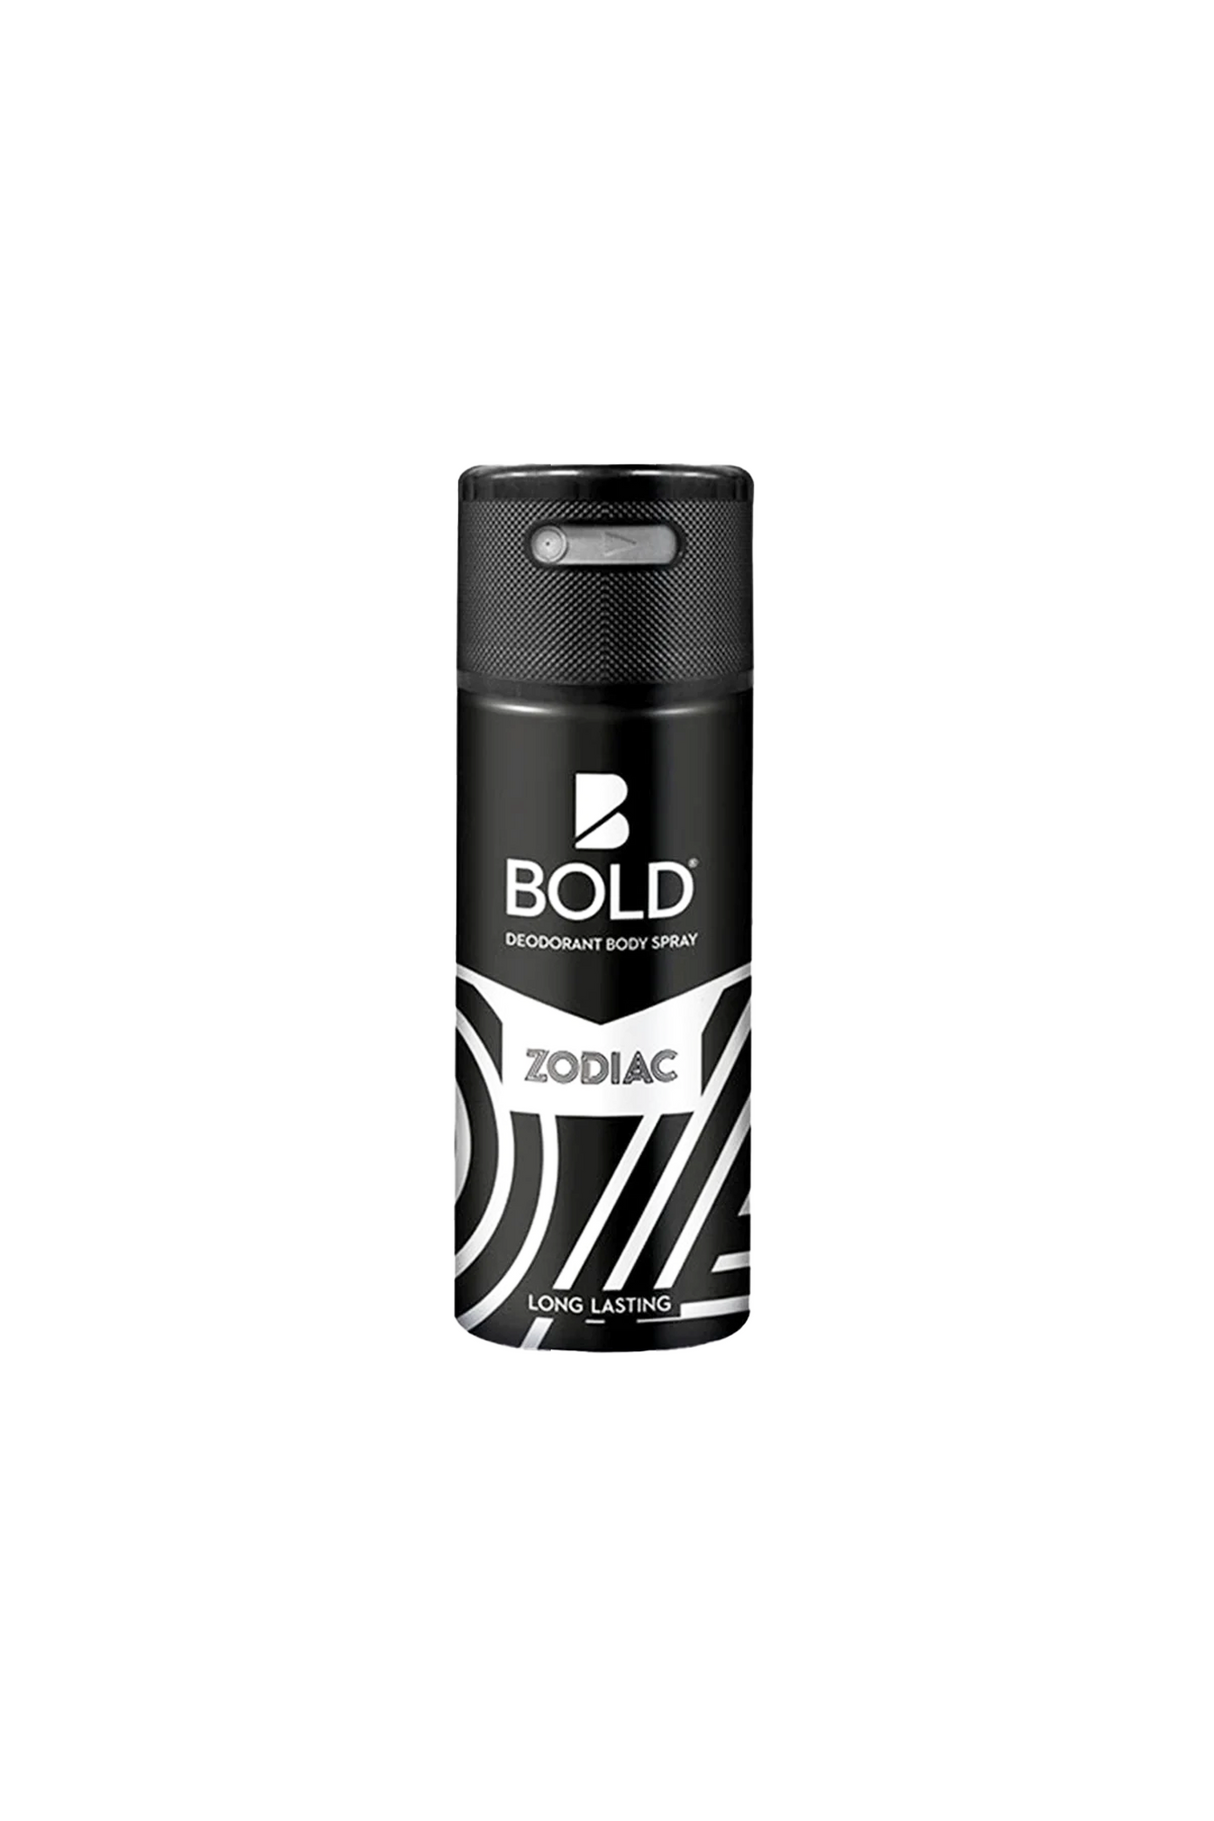 bold zodiac deodorant body spray 150ml